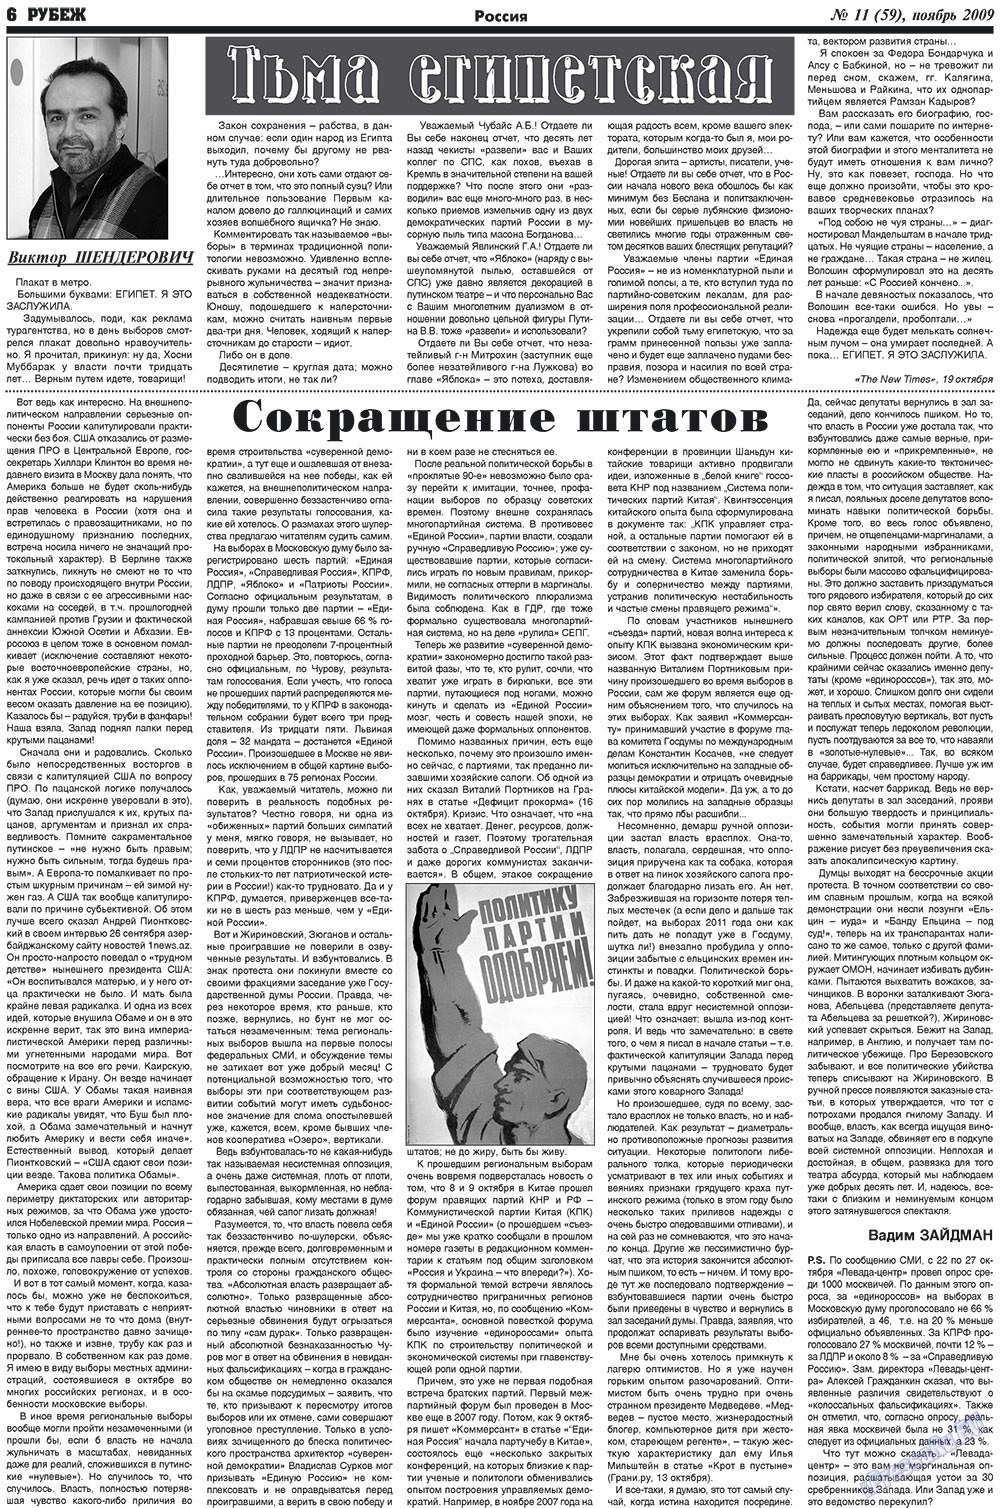 Рубеж (газета). 2009 год, номер 11, стр. 6